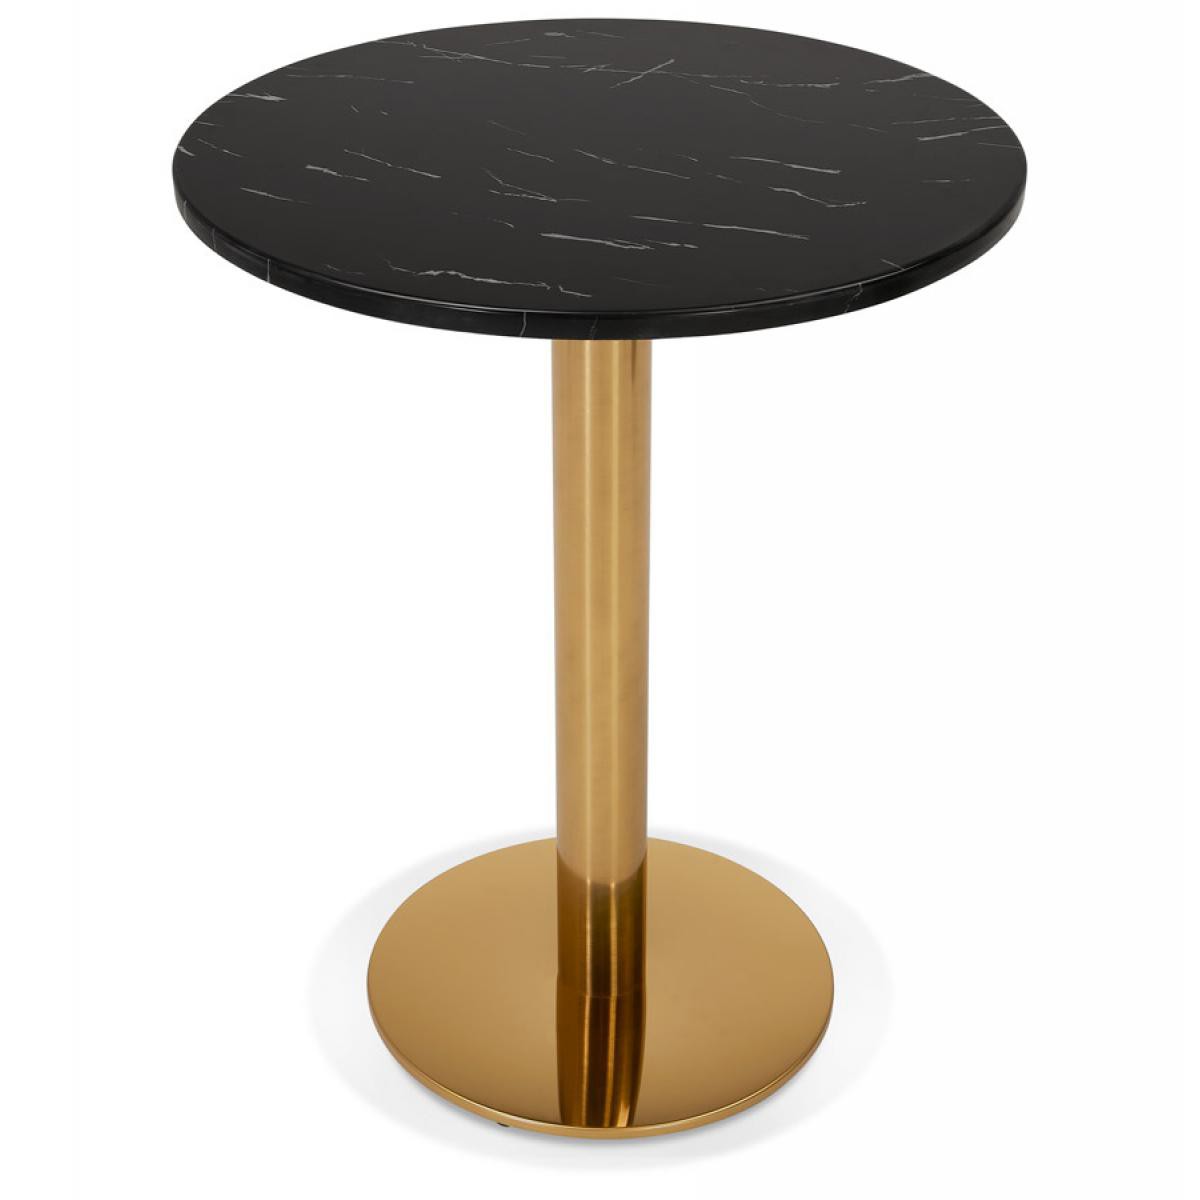 Alterego - Petite table bistrot ronde 'BATIGNOL' en pierre noire effet marbre et pied en métal doré - Ø 60 cm - Tables à manger